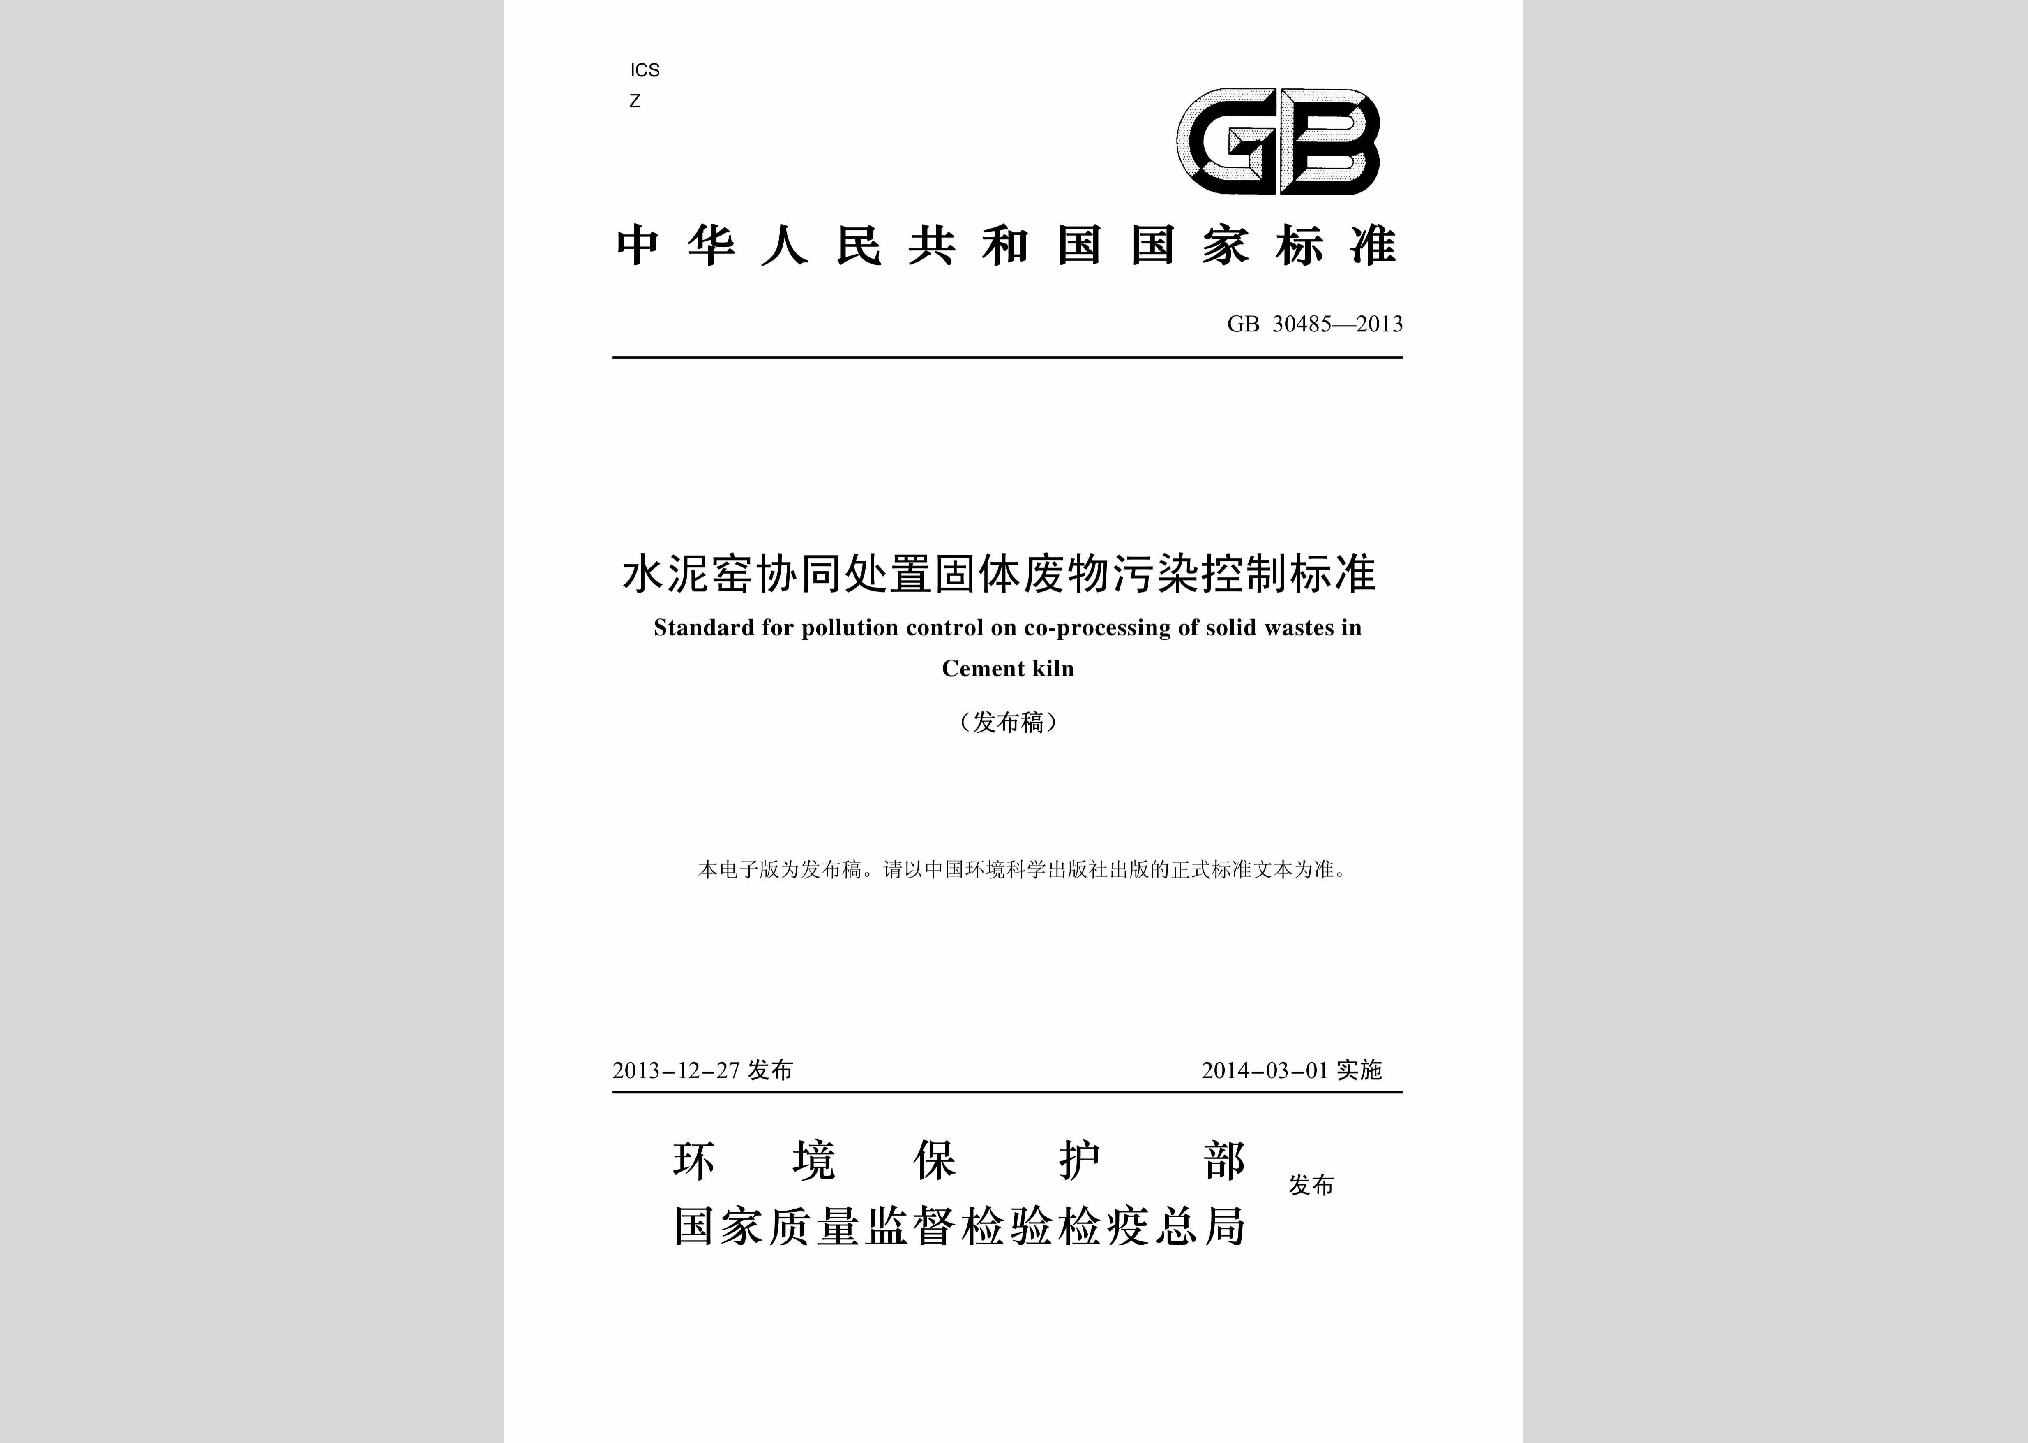 GB30485-2013：水泥窑协同处置固体废物污染控制标准